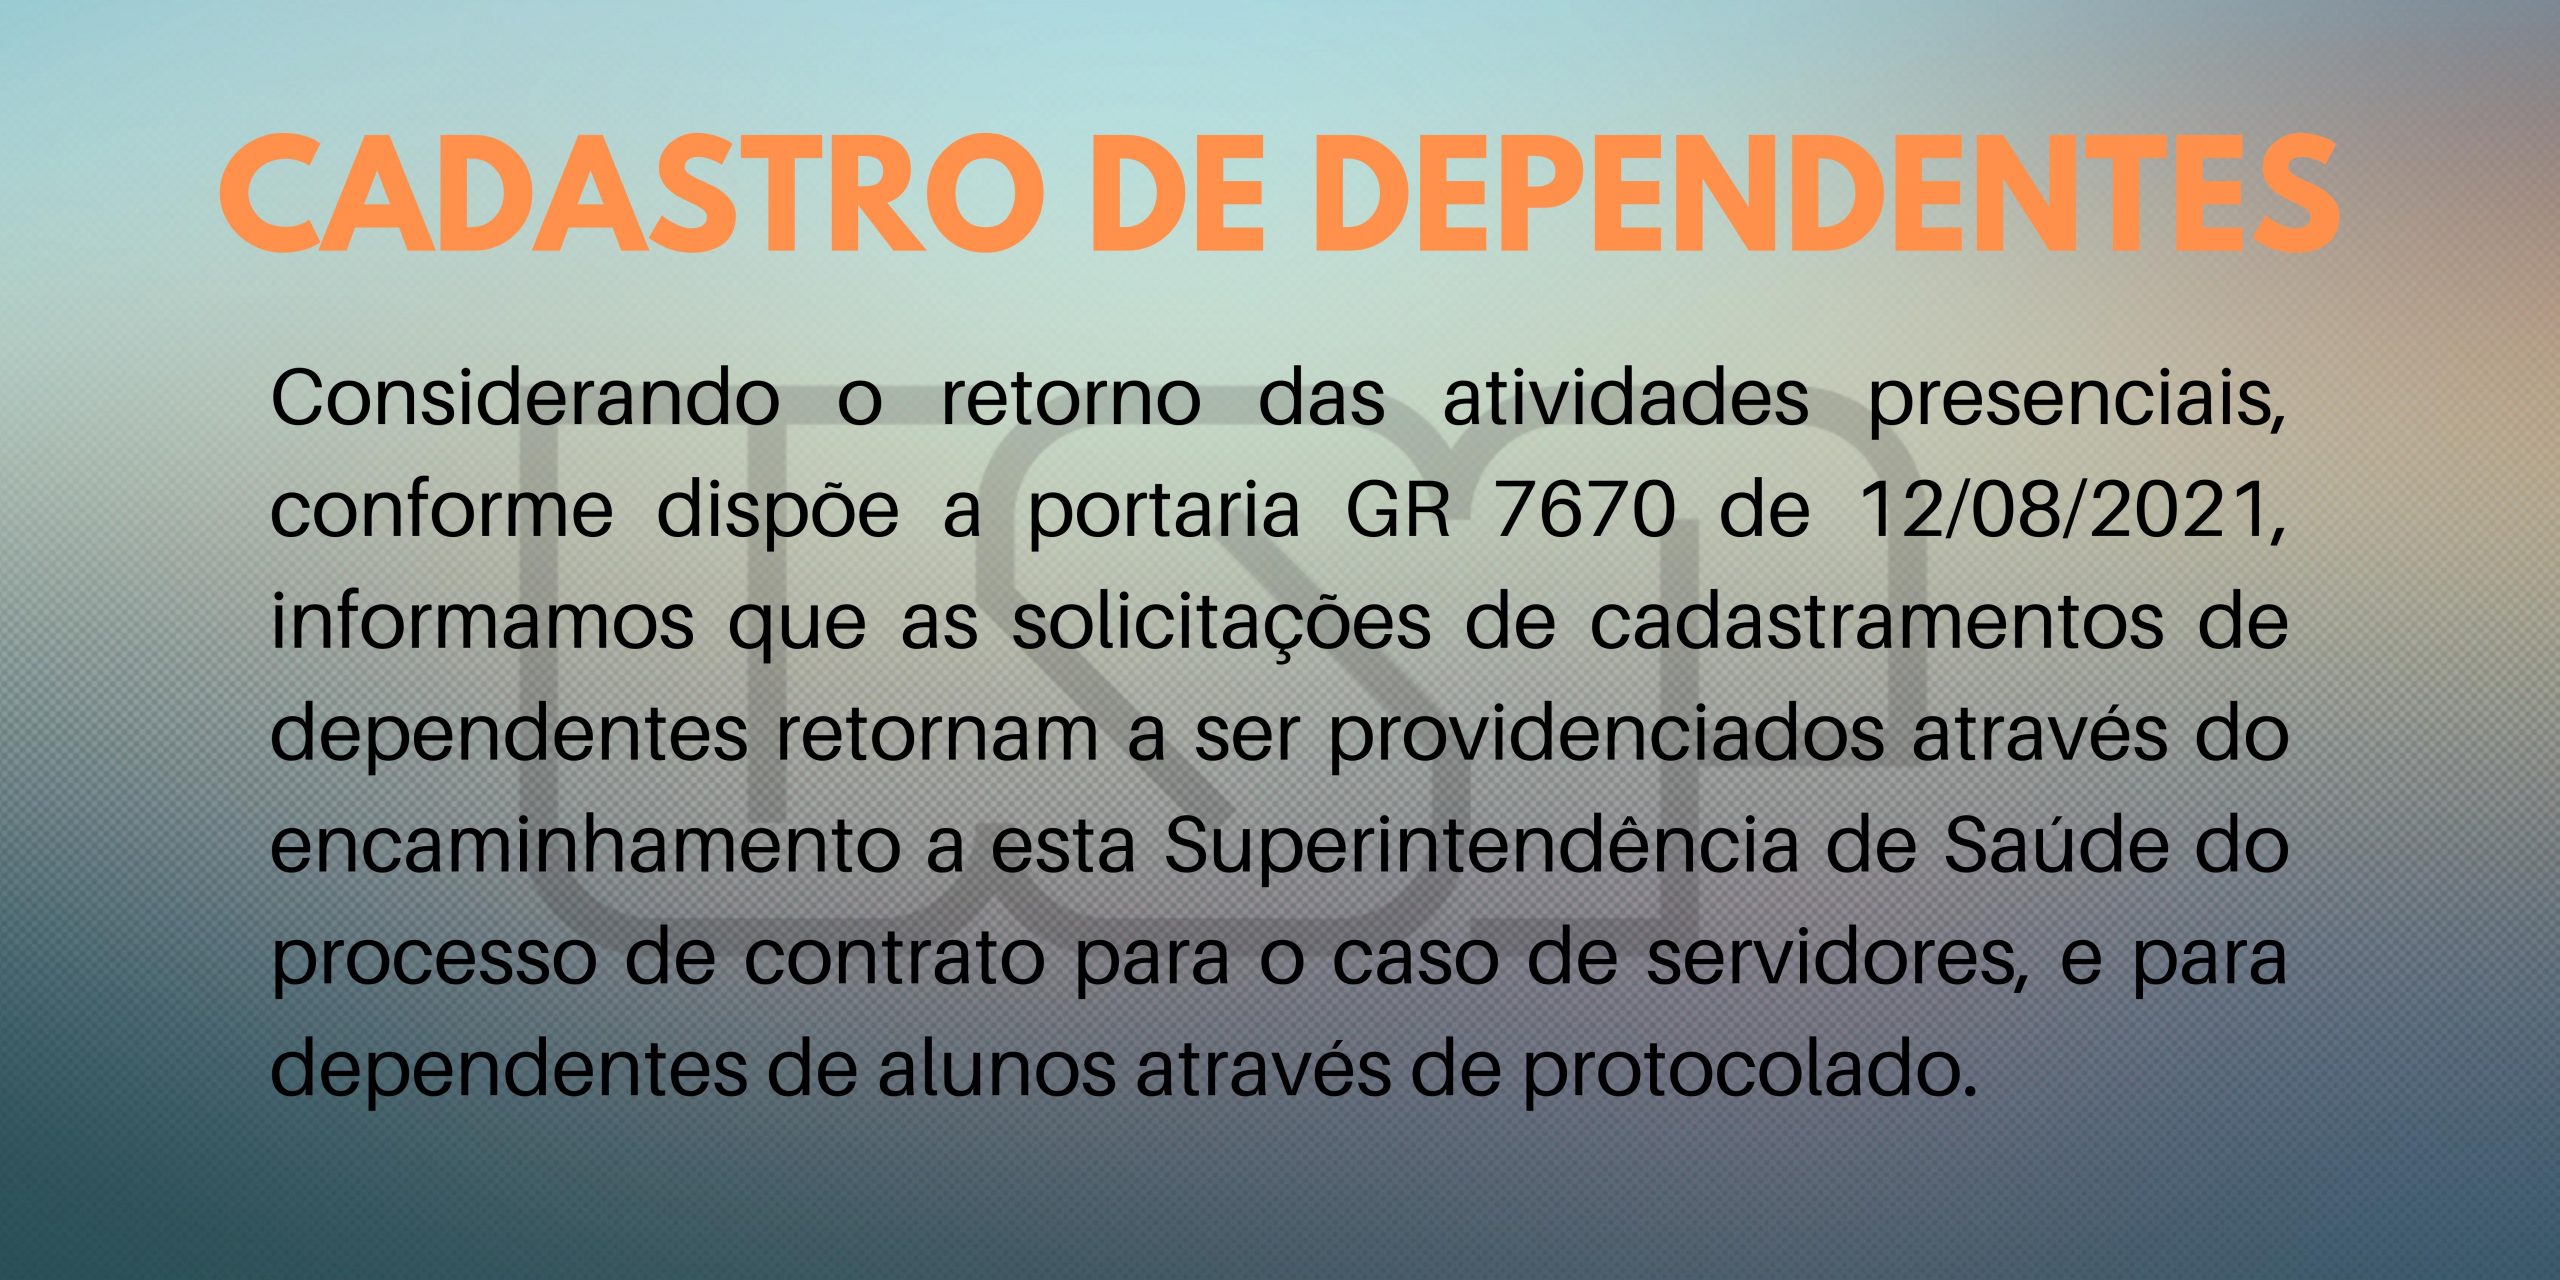 CADASTRO DE DEPENDENTES (1)